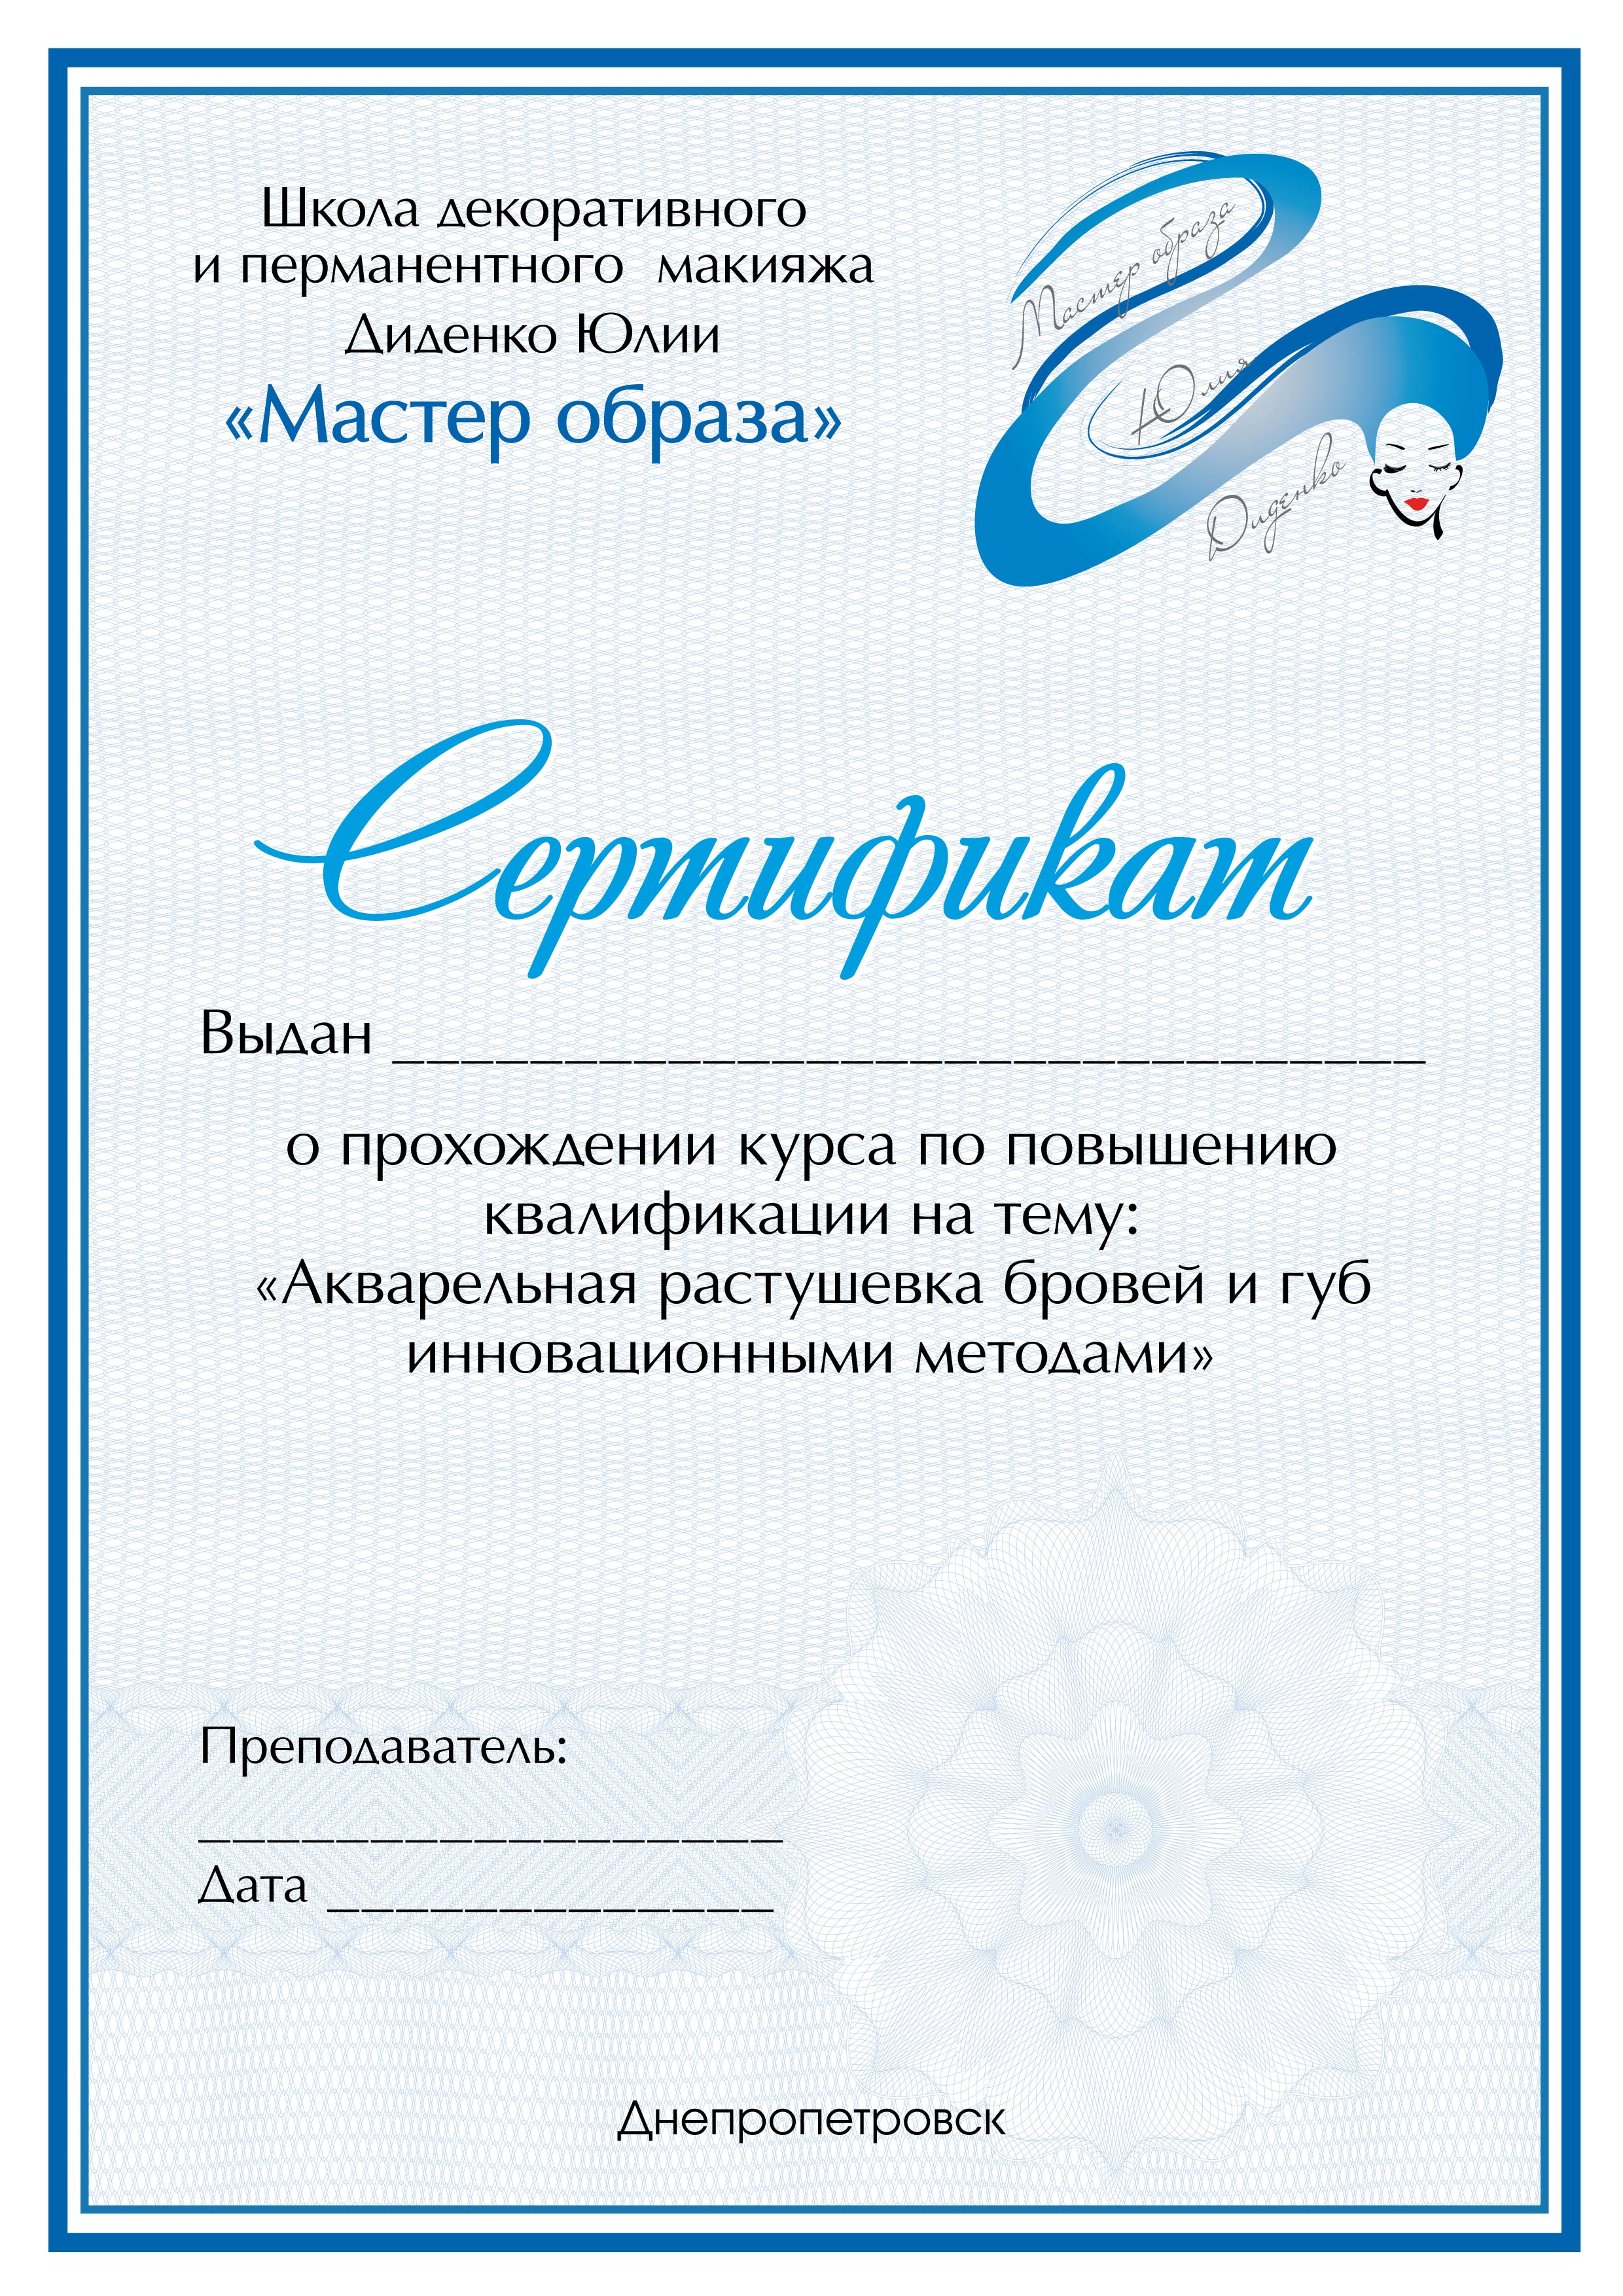 diplom_master_obraza_yuliya_didenko-05